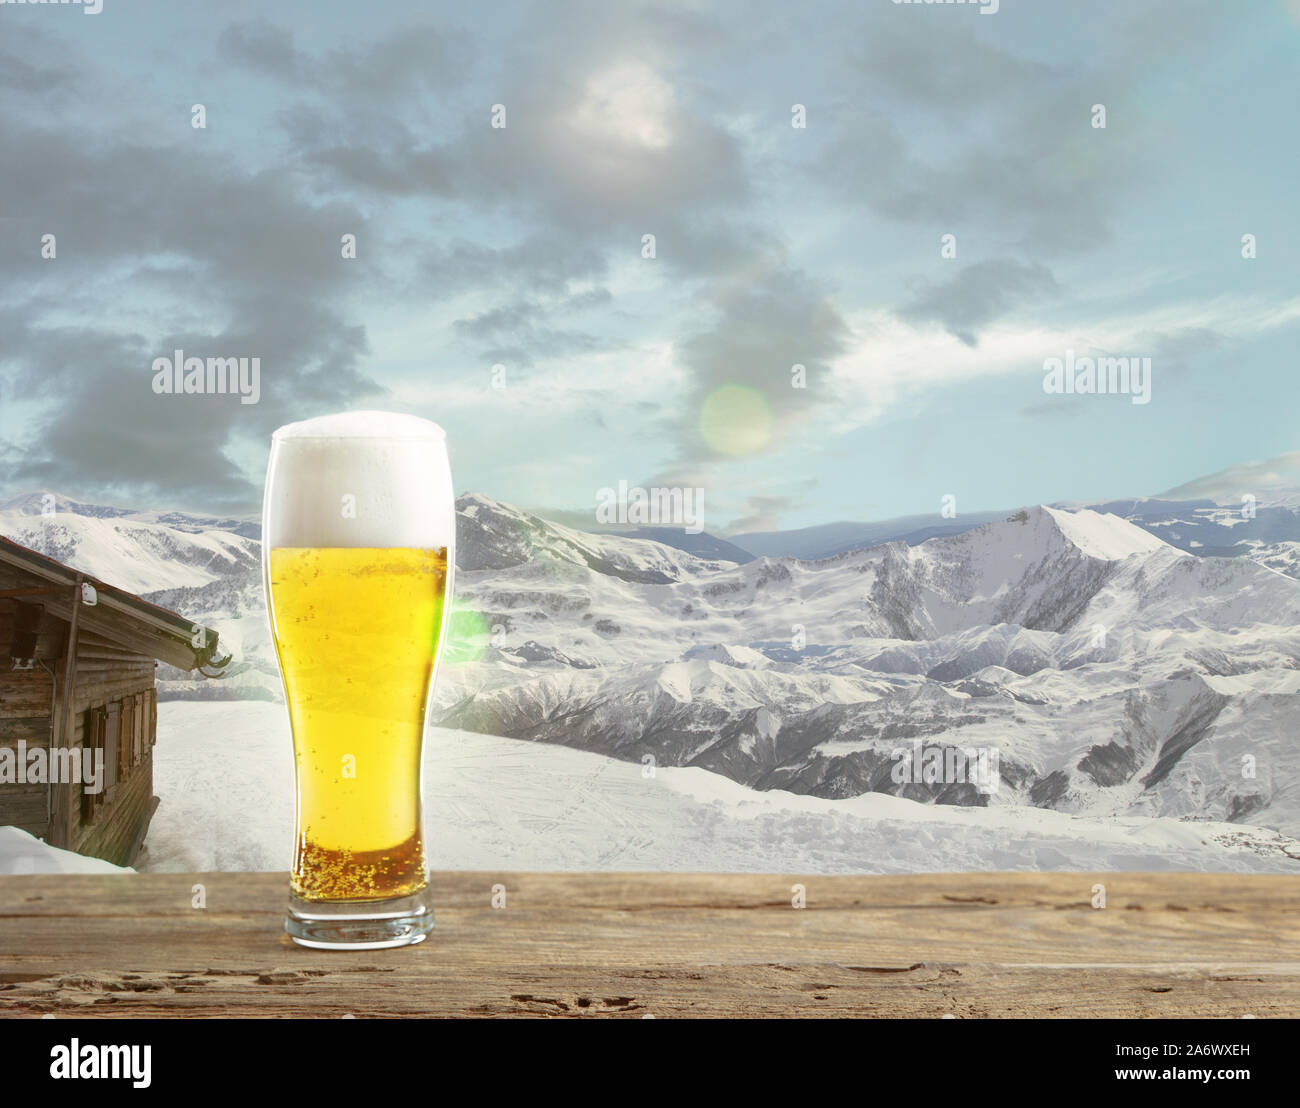 Einzelne Leuchte Bier im Glas und Landschaft der Berge im Hintergrund.  Alcohole trinken und Sonnenschein und klaren Himmel. Warm im Frühling,  Urlaub, Reise, Abenteuer Stockfotografie - Alamy